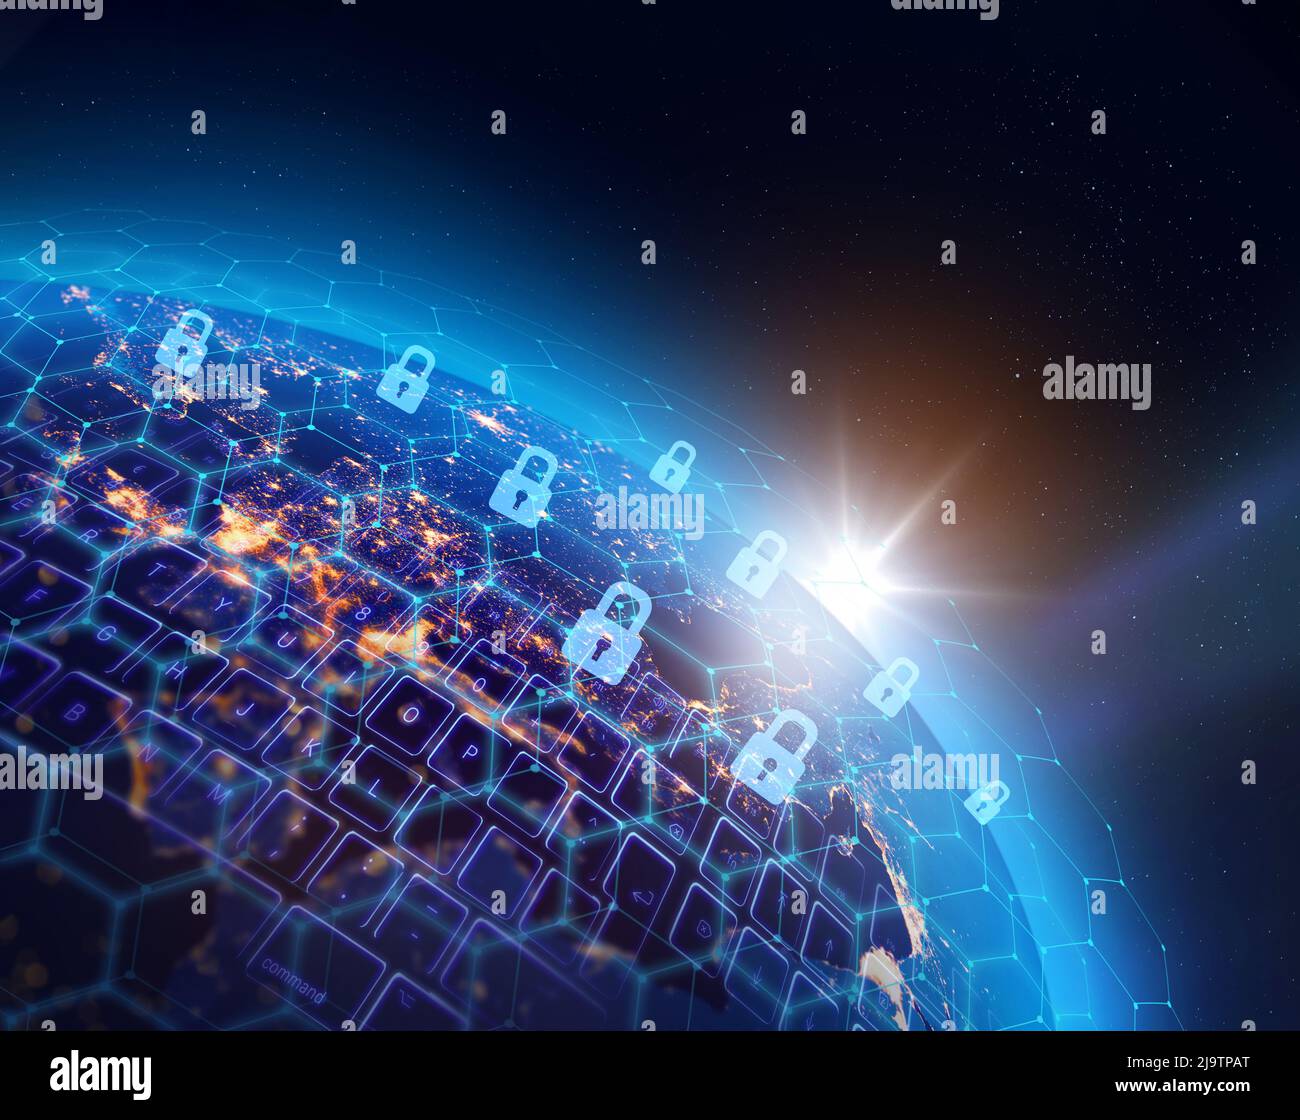 Weltweite Netzwerkinfrastruktur für digitale Datensicherheit, Konzept für Datenschutzverletzungen. Einige Elemente des Bildes, die von der NASA eingerichtet wurden. Stockfoto